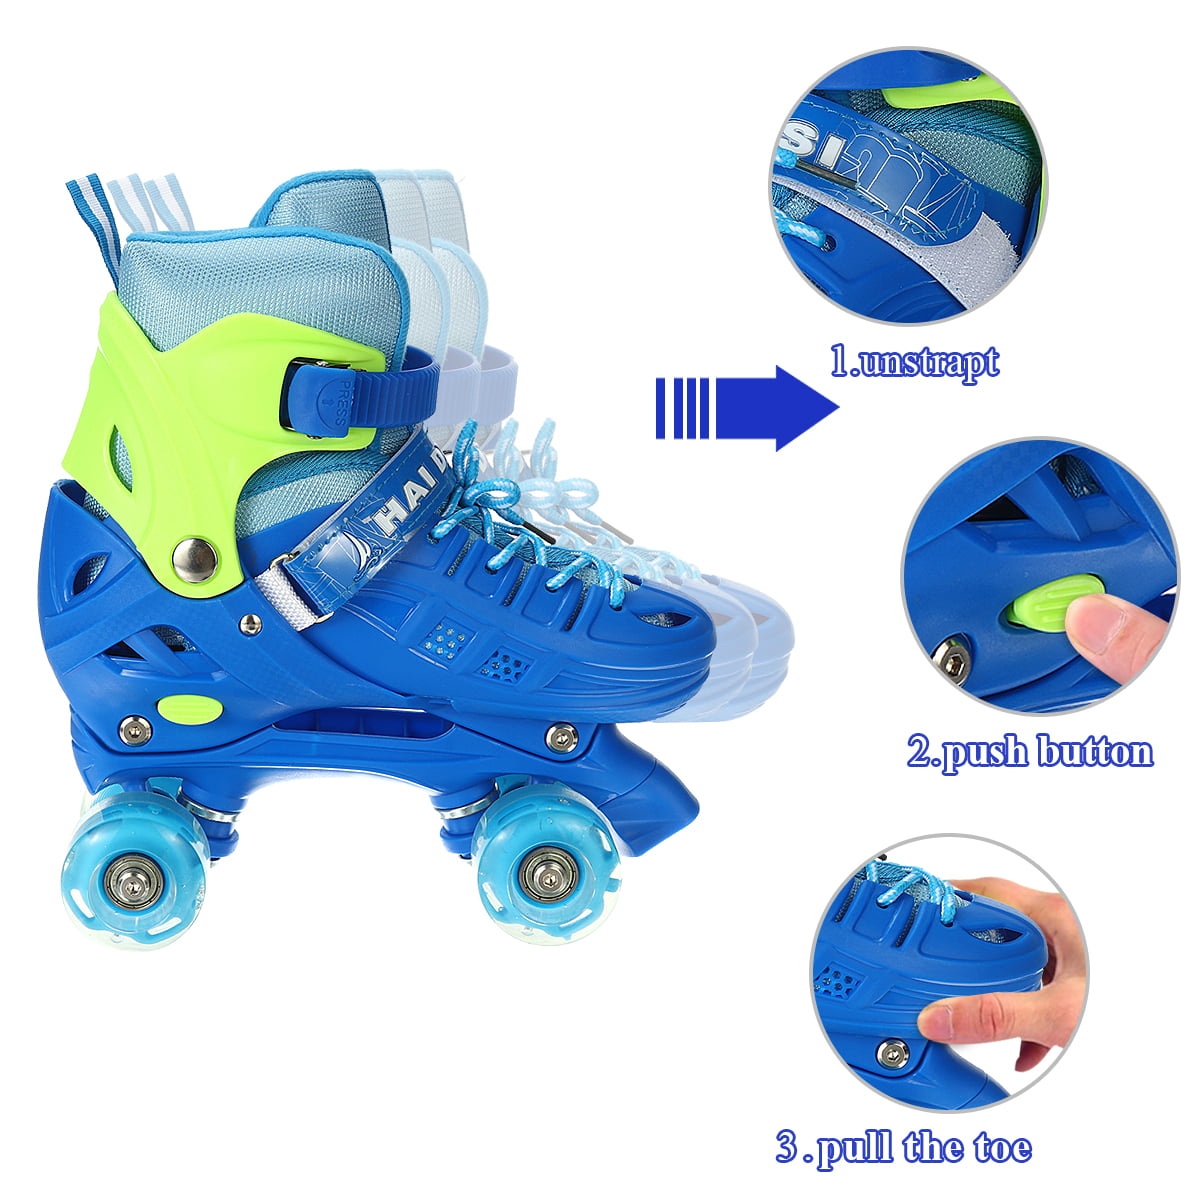 Buy Kids Quad Roller Skates for Boys Girls Adjustable Beginner 